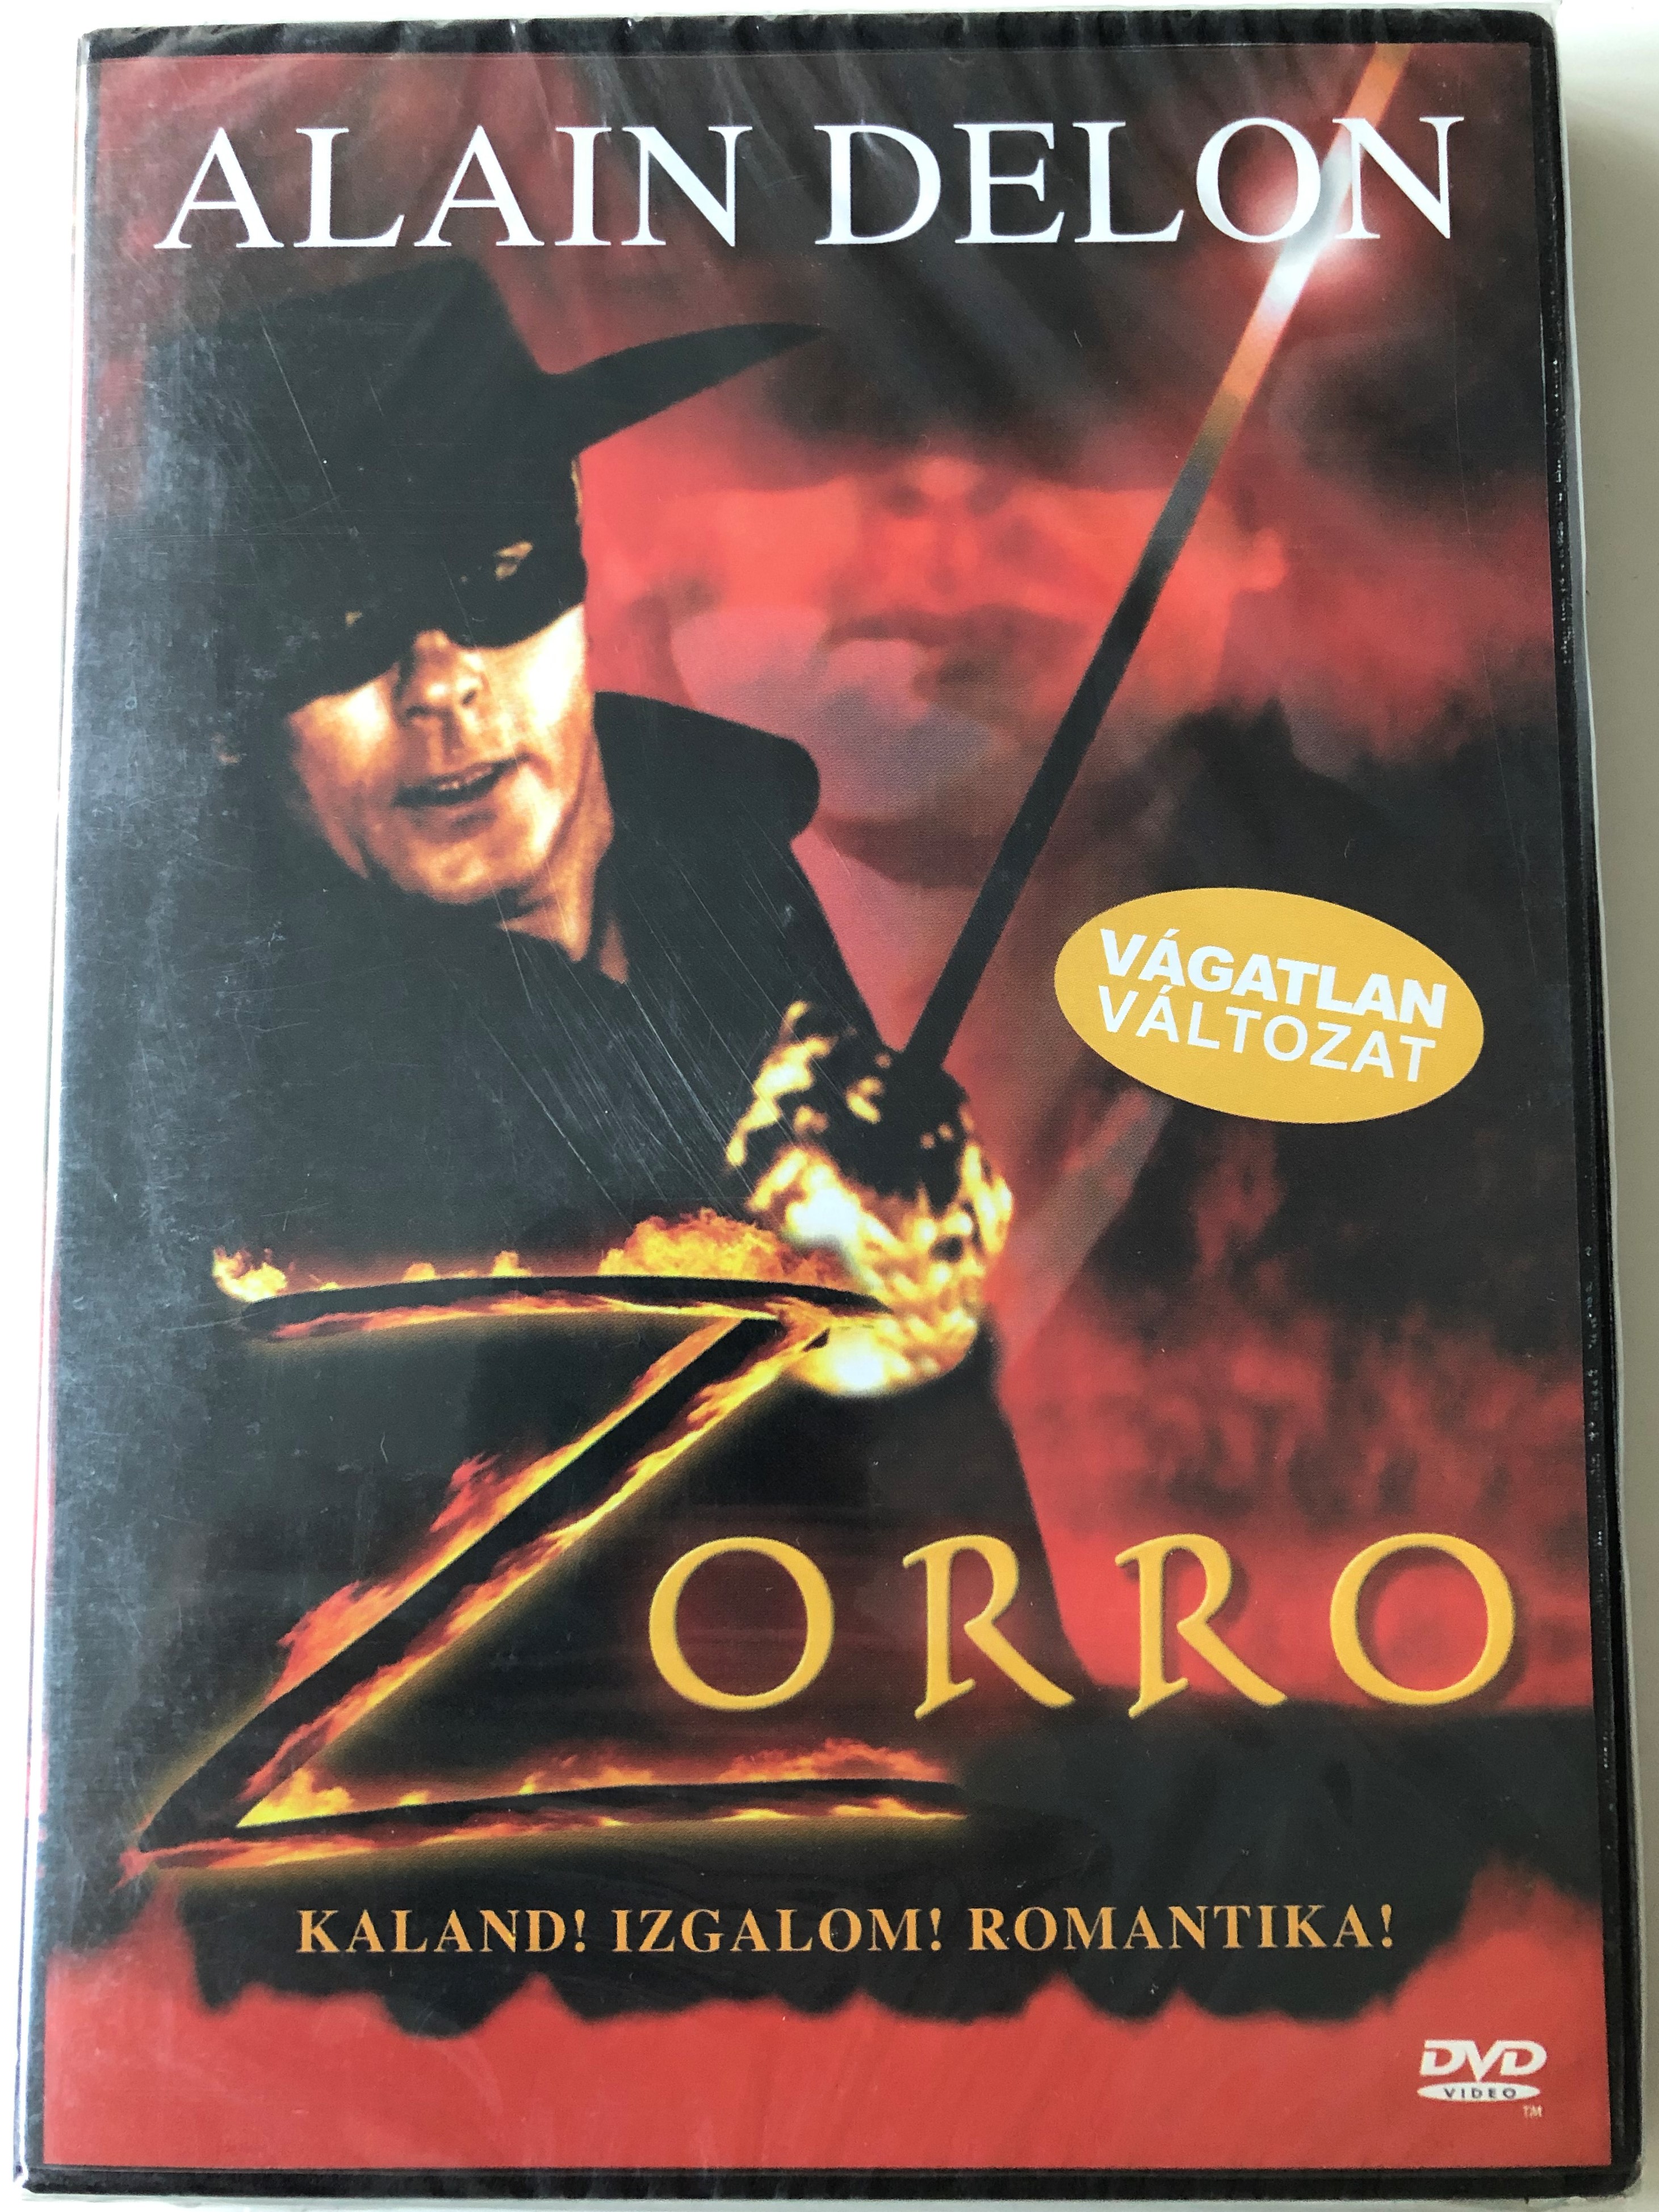 Zorro 1975 DVD / Directed by Duccio Tessari / Starring: Alain Delon,  Ottavia Piccolo, Enzo Cerusico, Moustache Giacomo - Bible in My Language